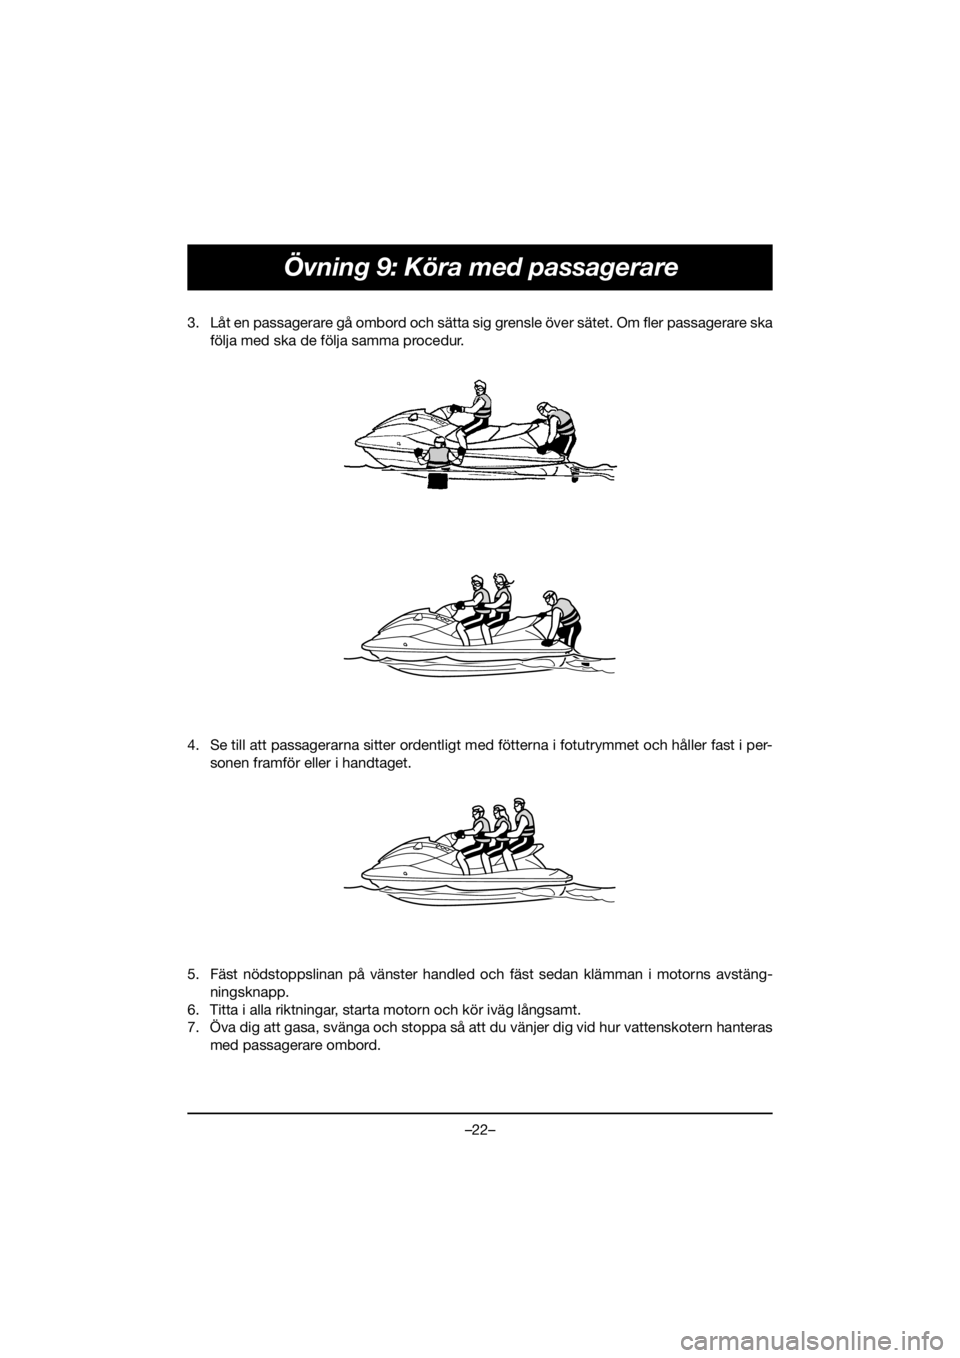 YAMAHA FJR1300 2020  Manuale duso (in Italian) –22–
Övning 9: Köra med passagerare
3. Låt en passagerare gå ombord och sätta sig grensle över sätet. Om fler passagerare ska
följa med ska de följa samma procedur. 
4. Se till att passag